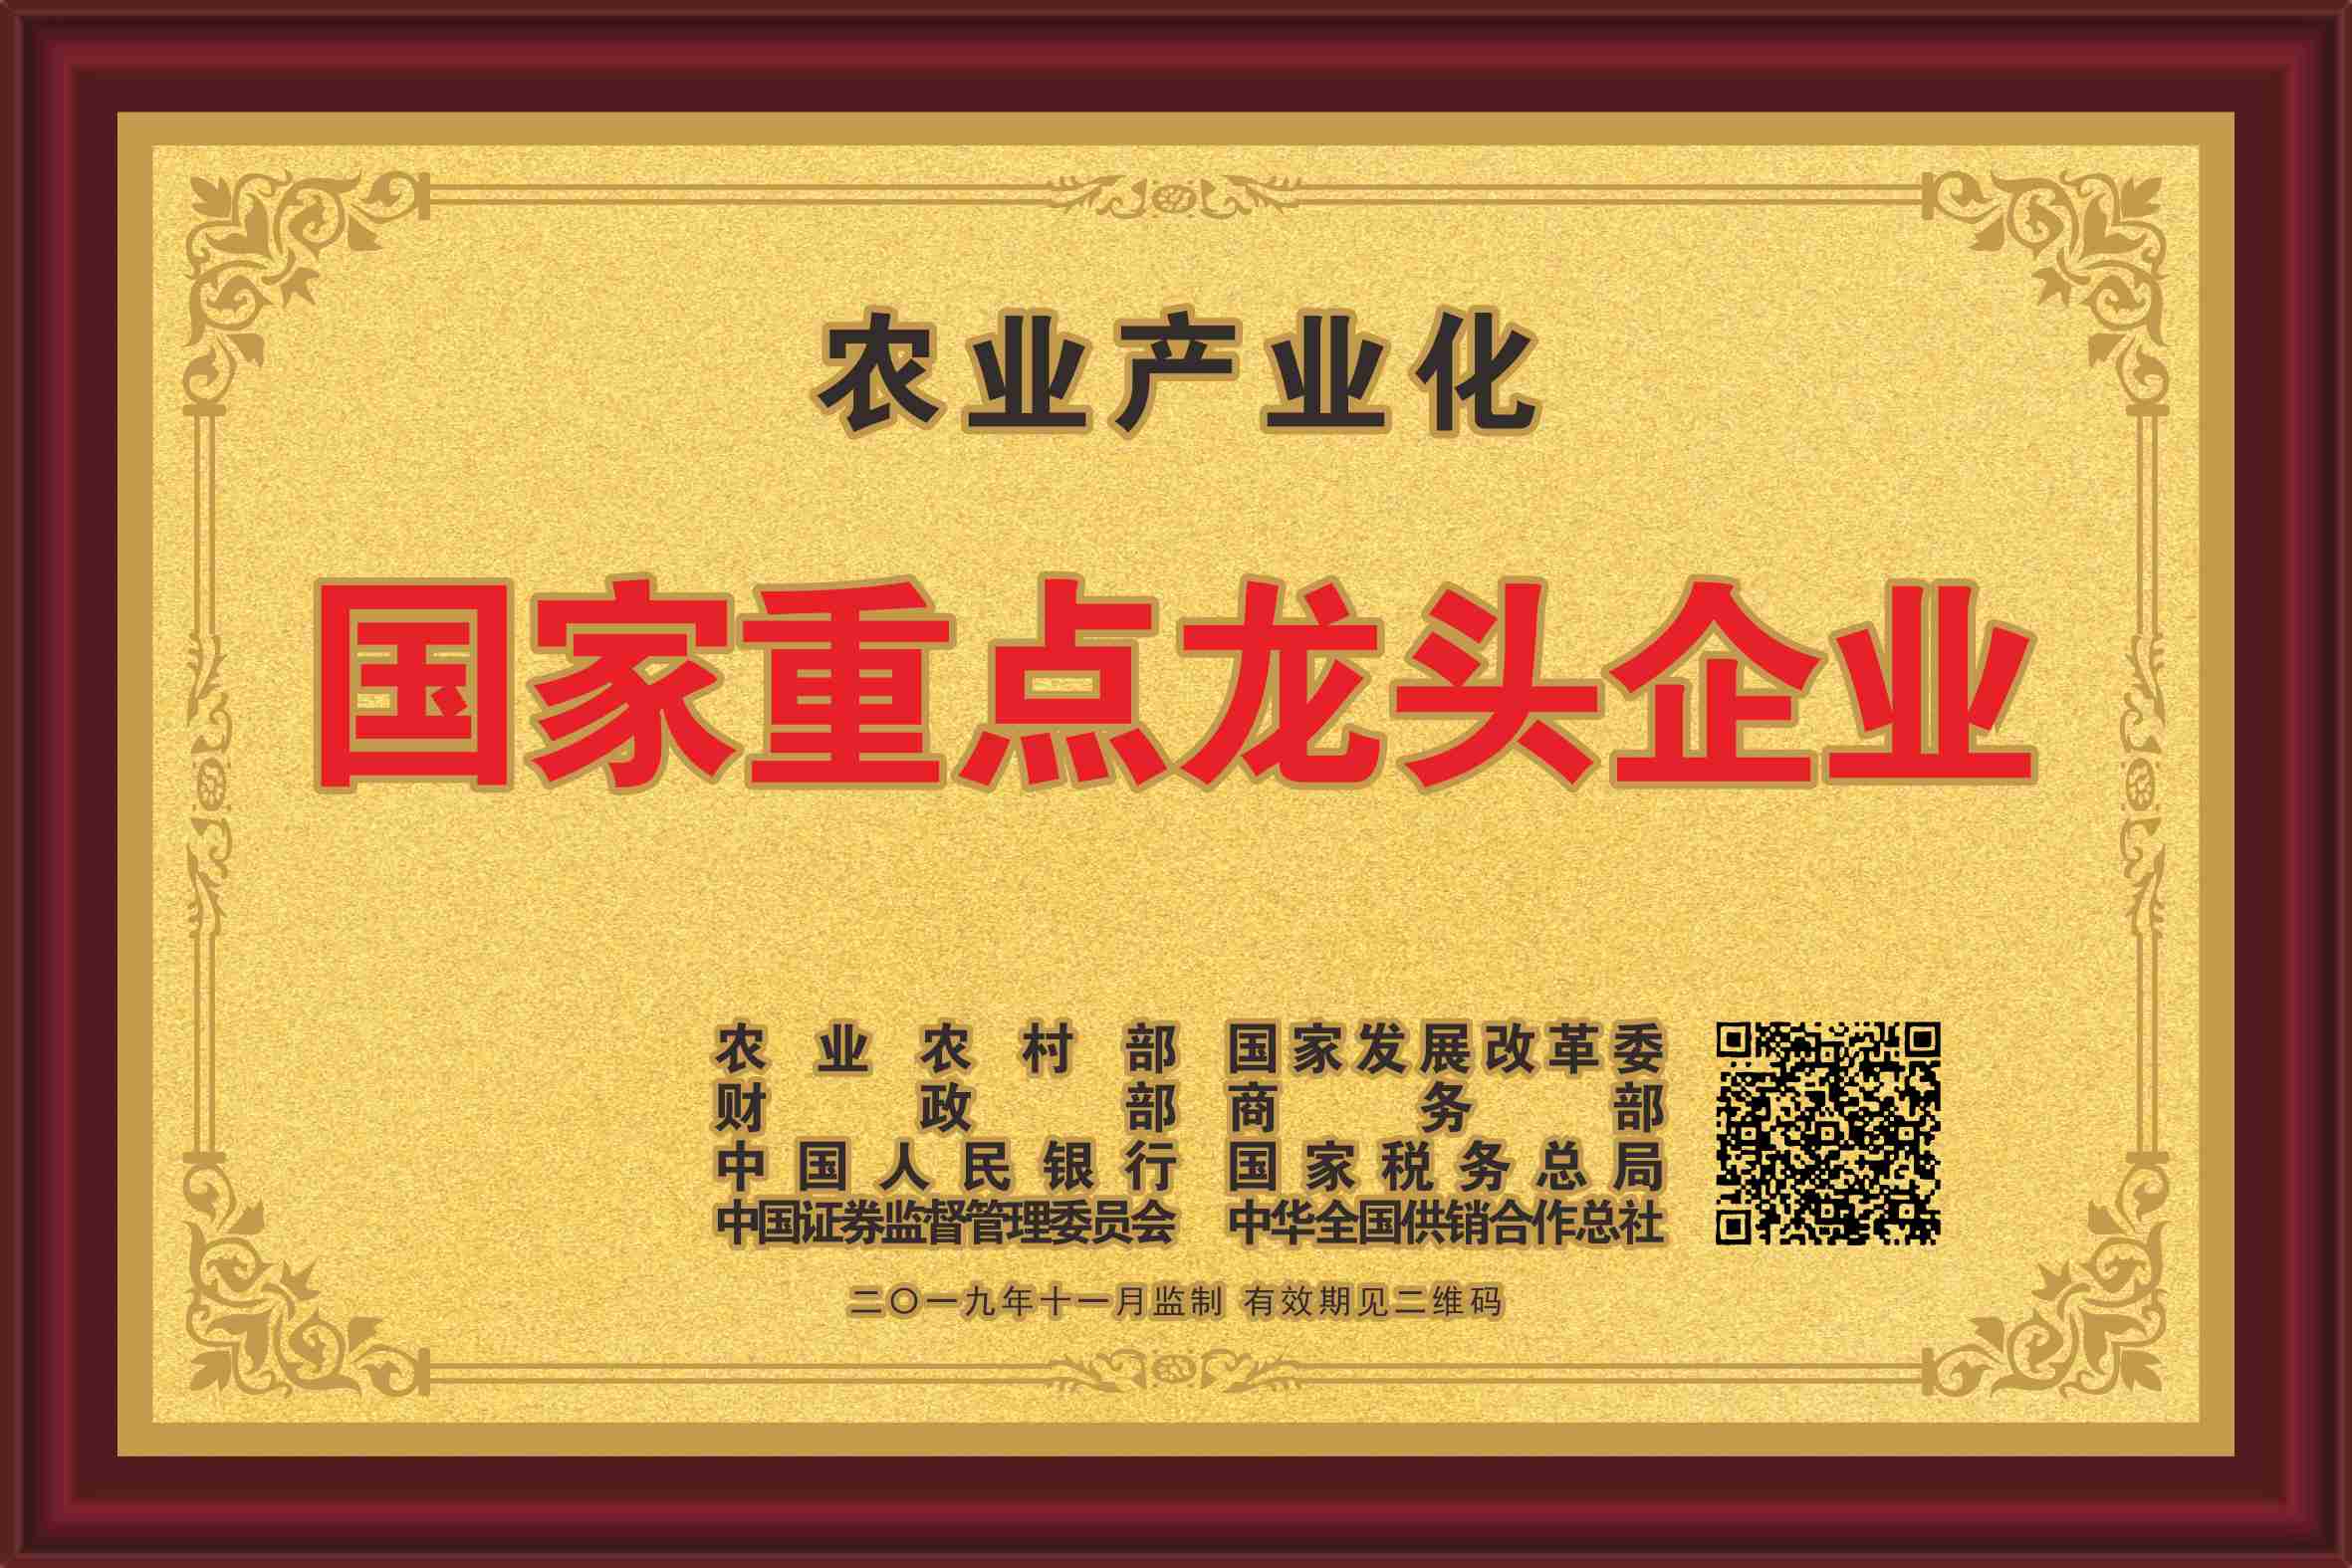 殊荣加身湘丰茶业集团再获标杆龙头企业和优势特色产业30强等称号